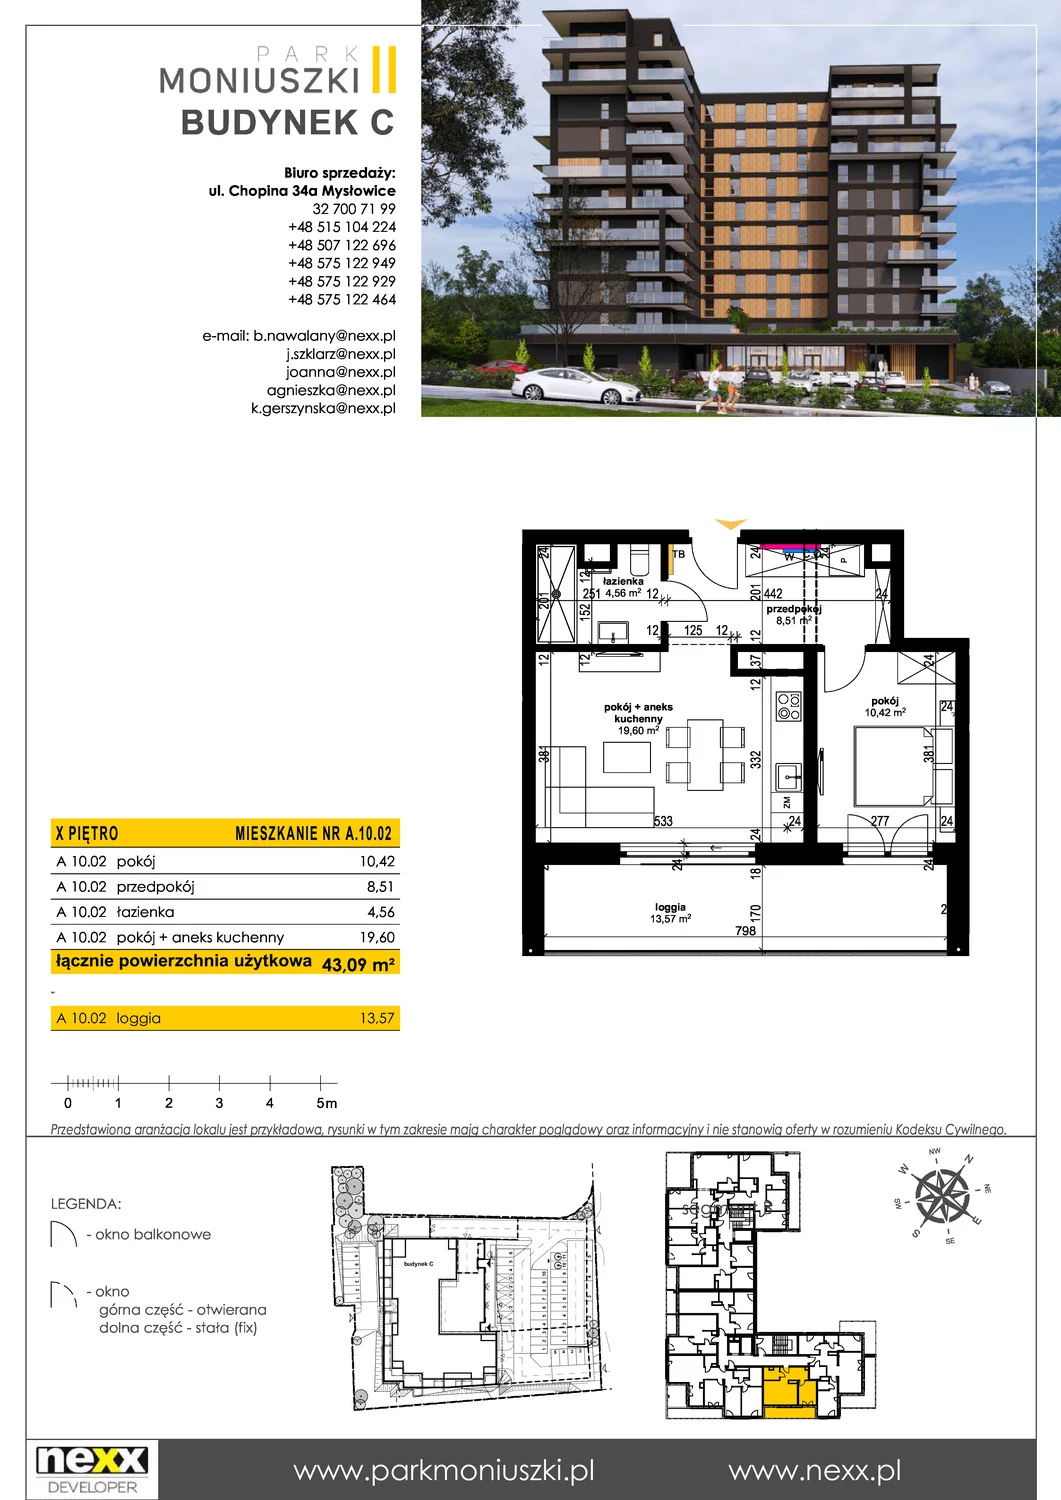 Mieszkanie 42,58 m², piętro 10, oferta nr A 10.02, Osiedle Park Moniuszki, Mysłowice, ul. Okrzei / Wielka Skotnica